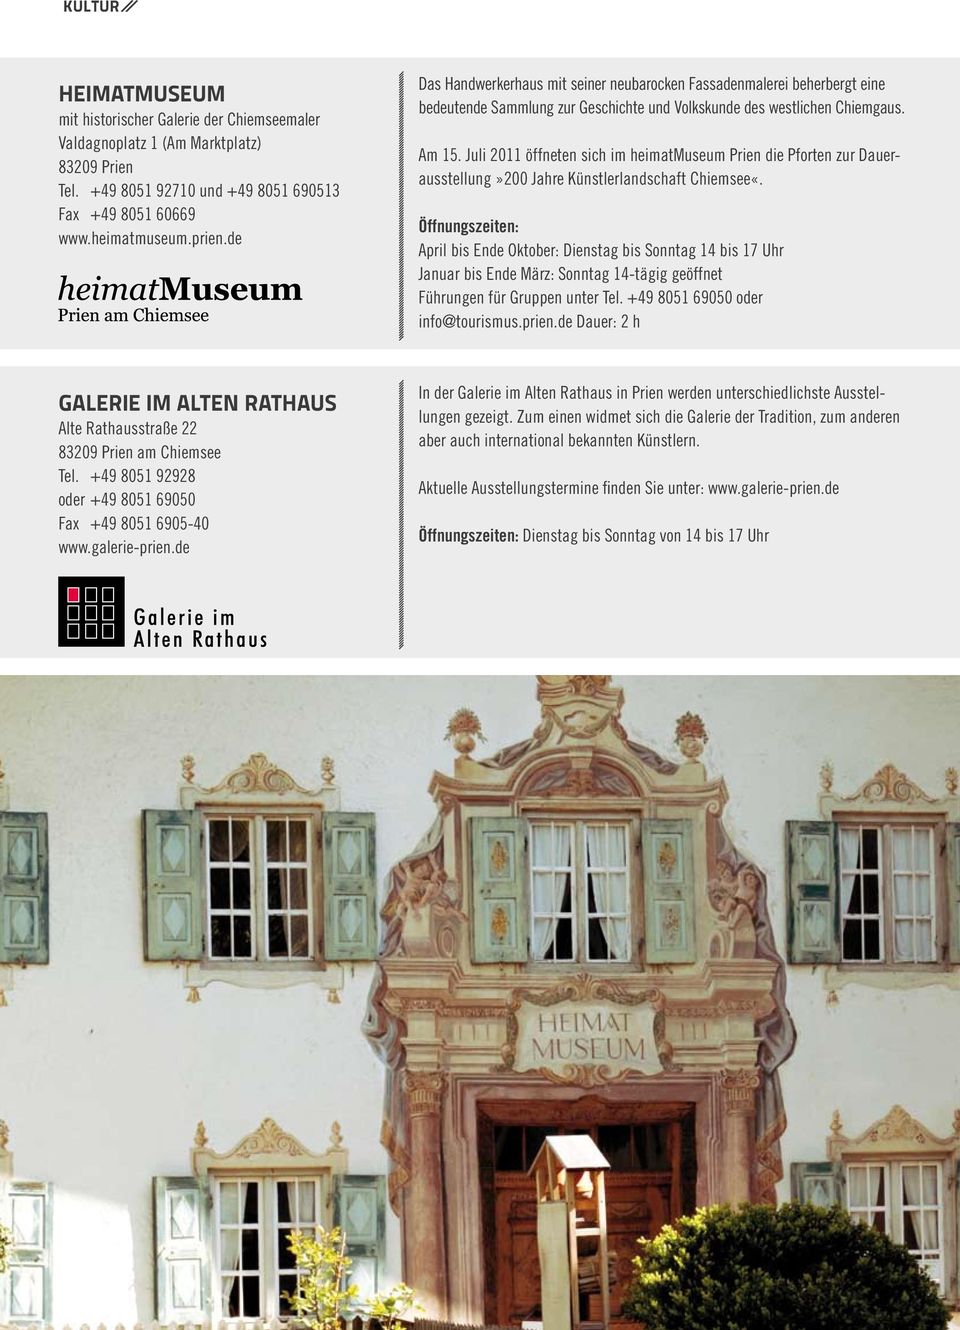 Juli 2011 öffneten sich im heimatmuseum Prien die Pforten zur Dauerausstellung»200 Jahre Künstlerlandschaft Chiemsee«.